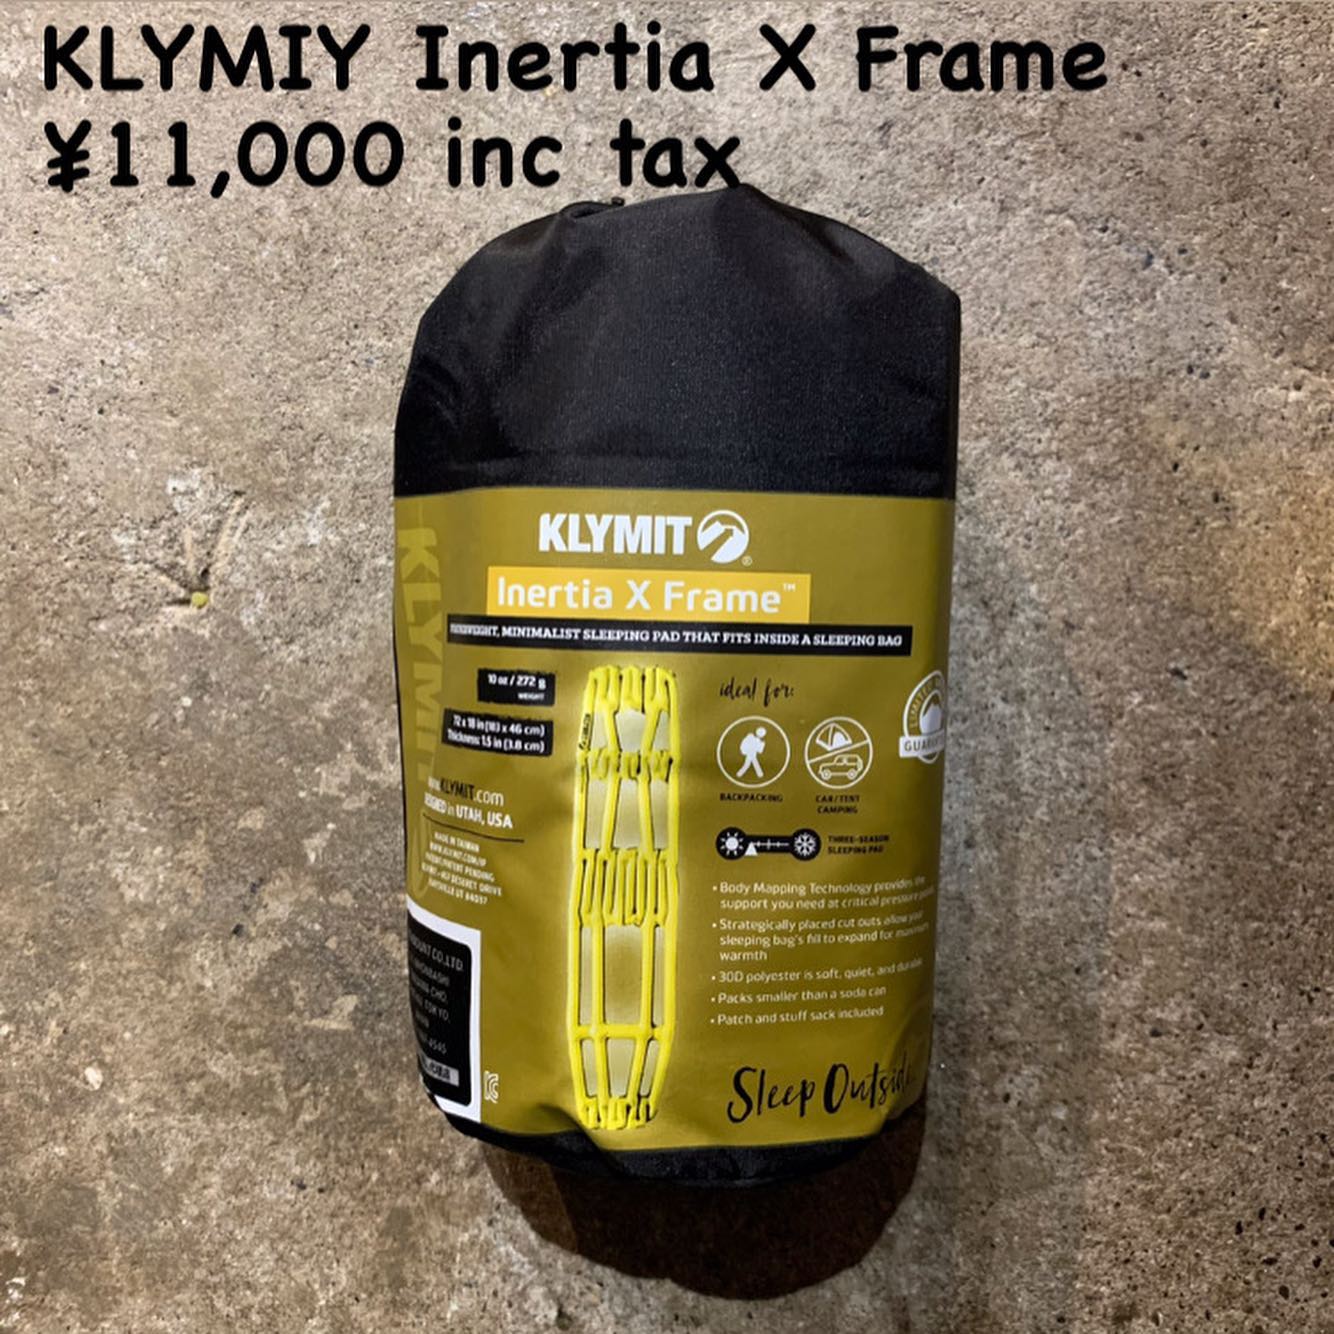 軽さとパッキングサイズを重視したマットシリーズ『KLYMIY イナーシャ X フレーム』のご紹介